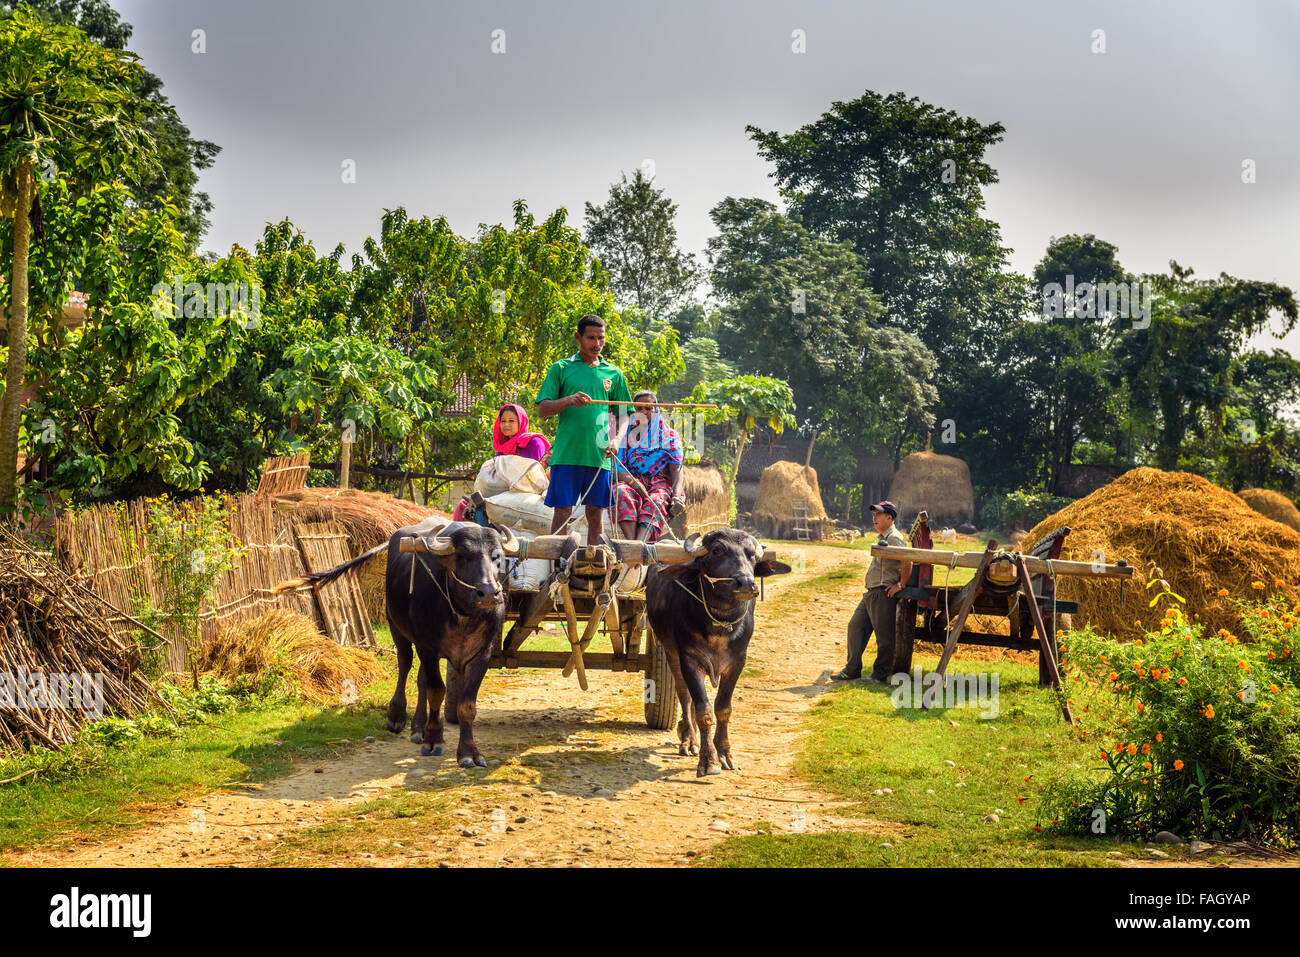 Népalais voyageant sur un chariot en bois attaché à une paire de taureaux Banque D'Images